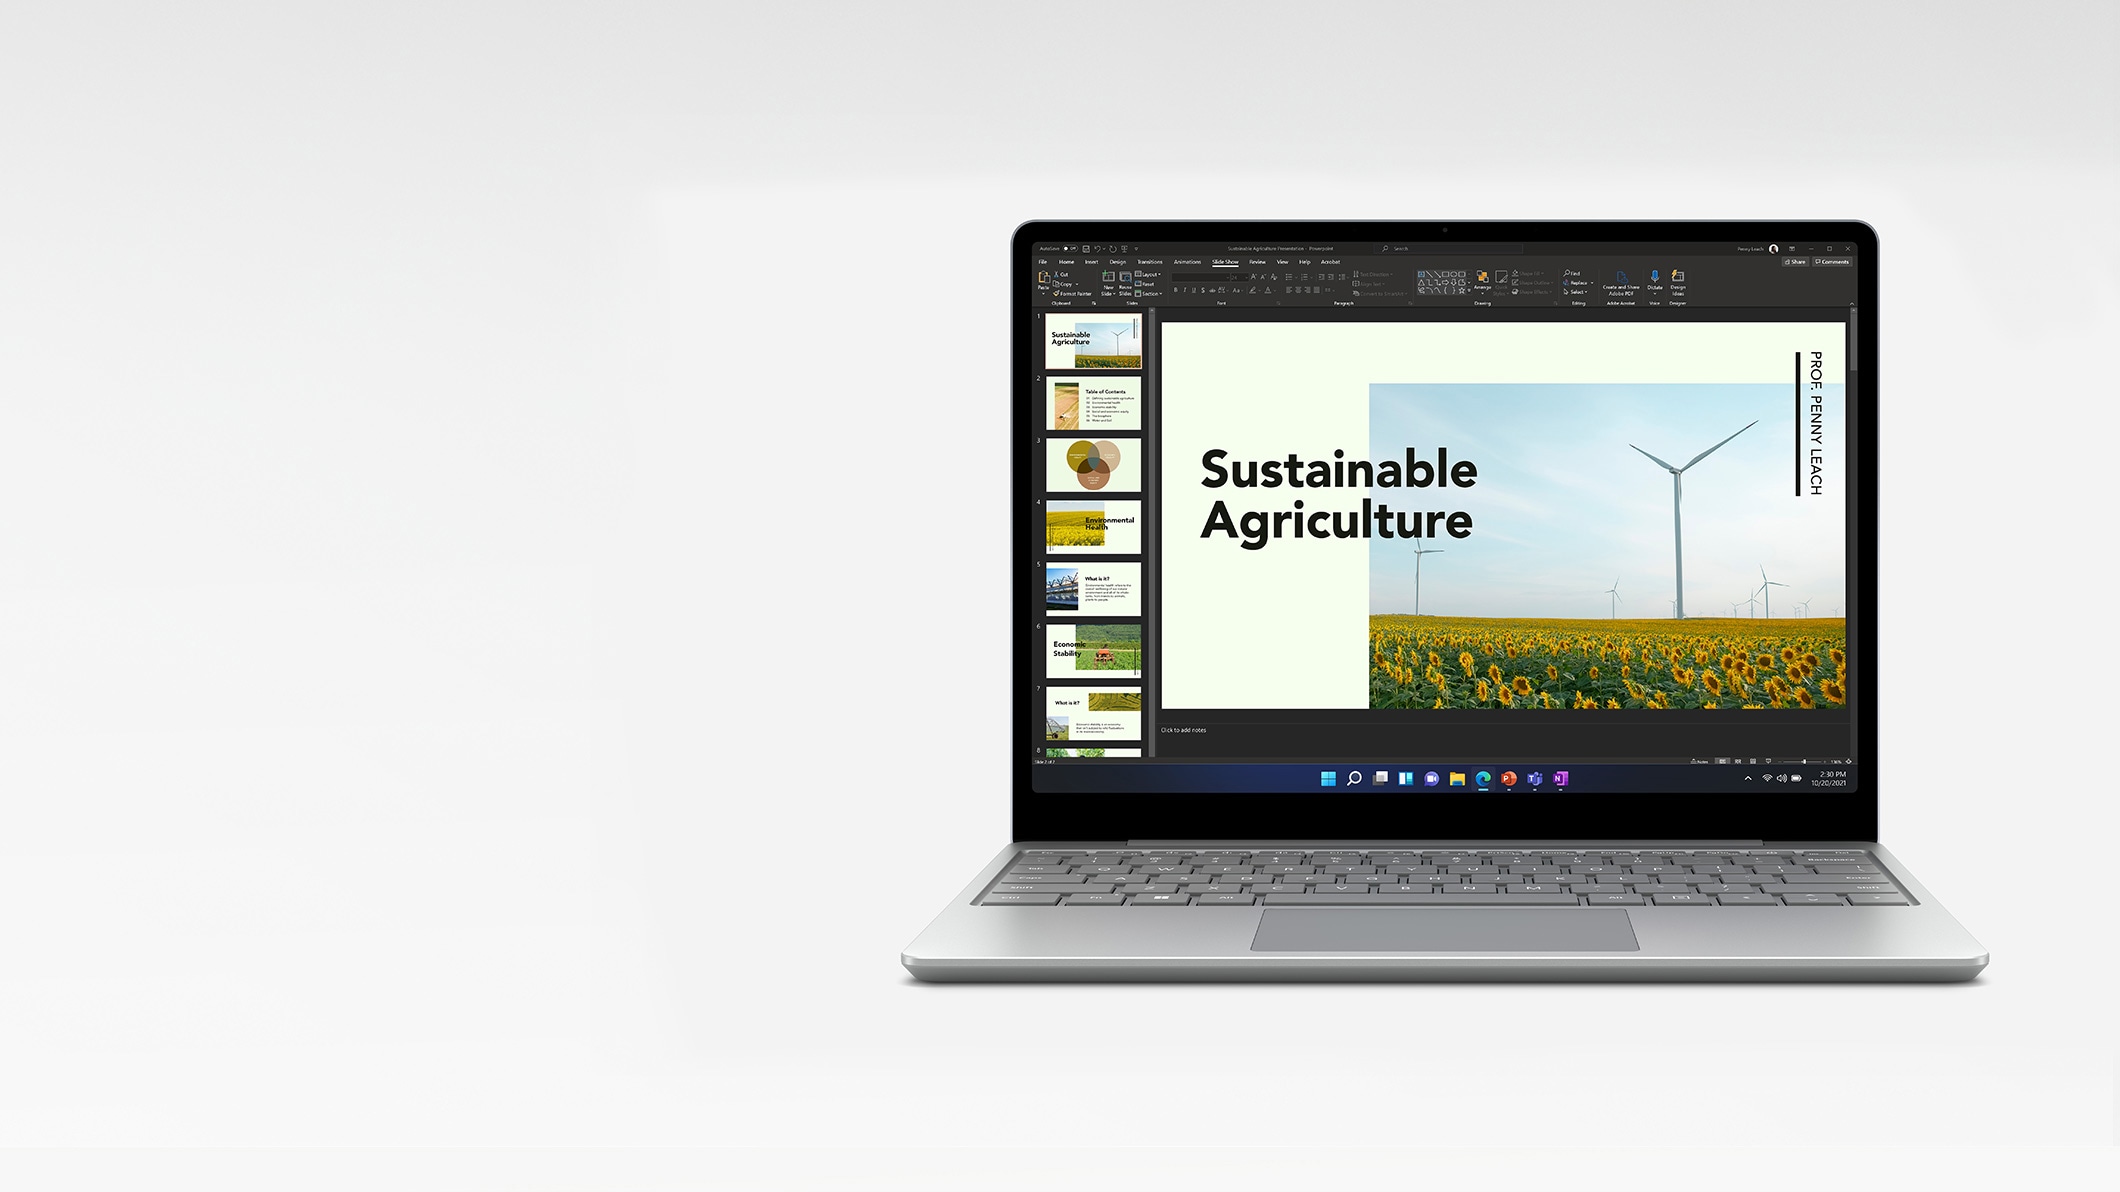 Szemből mutatott Surface Laptop Go, amelynek képernyőjén egy PowerPoint-prezentáció látható